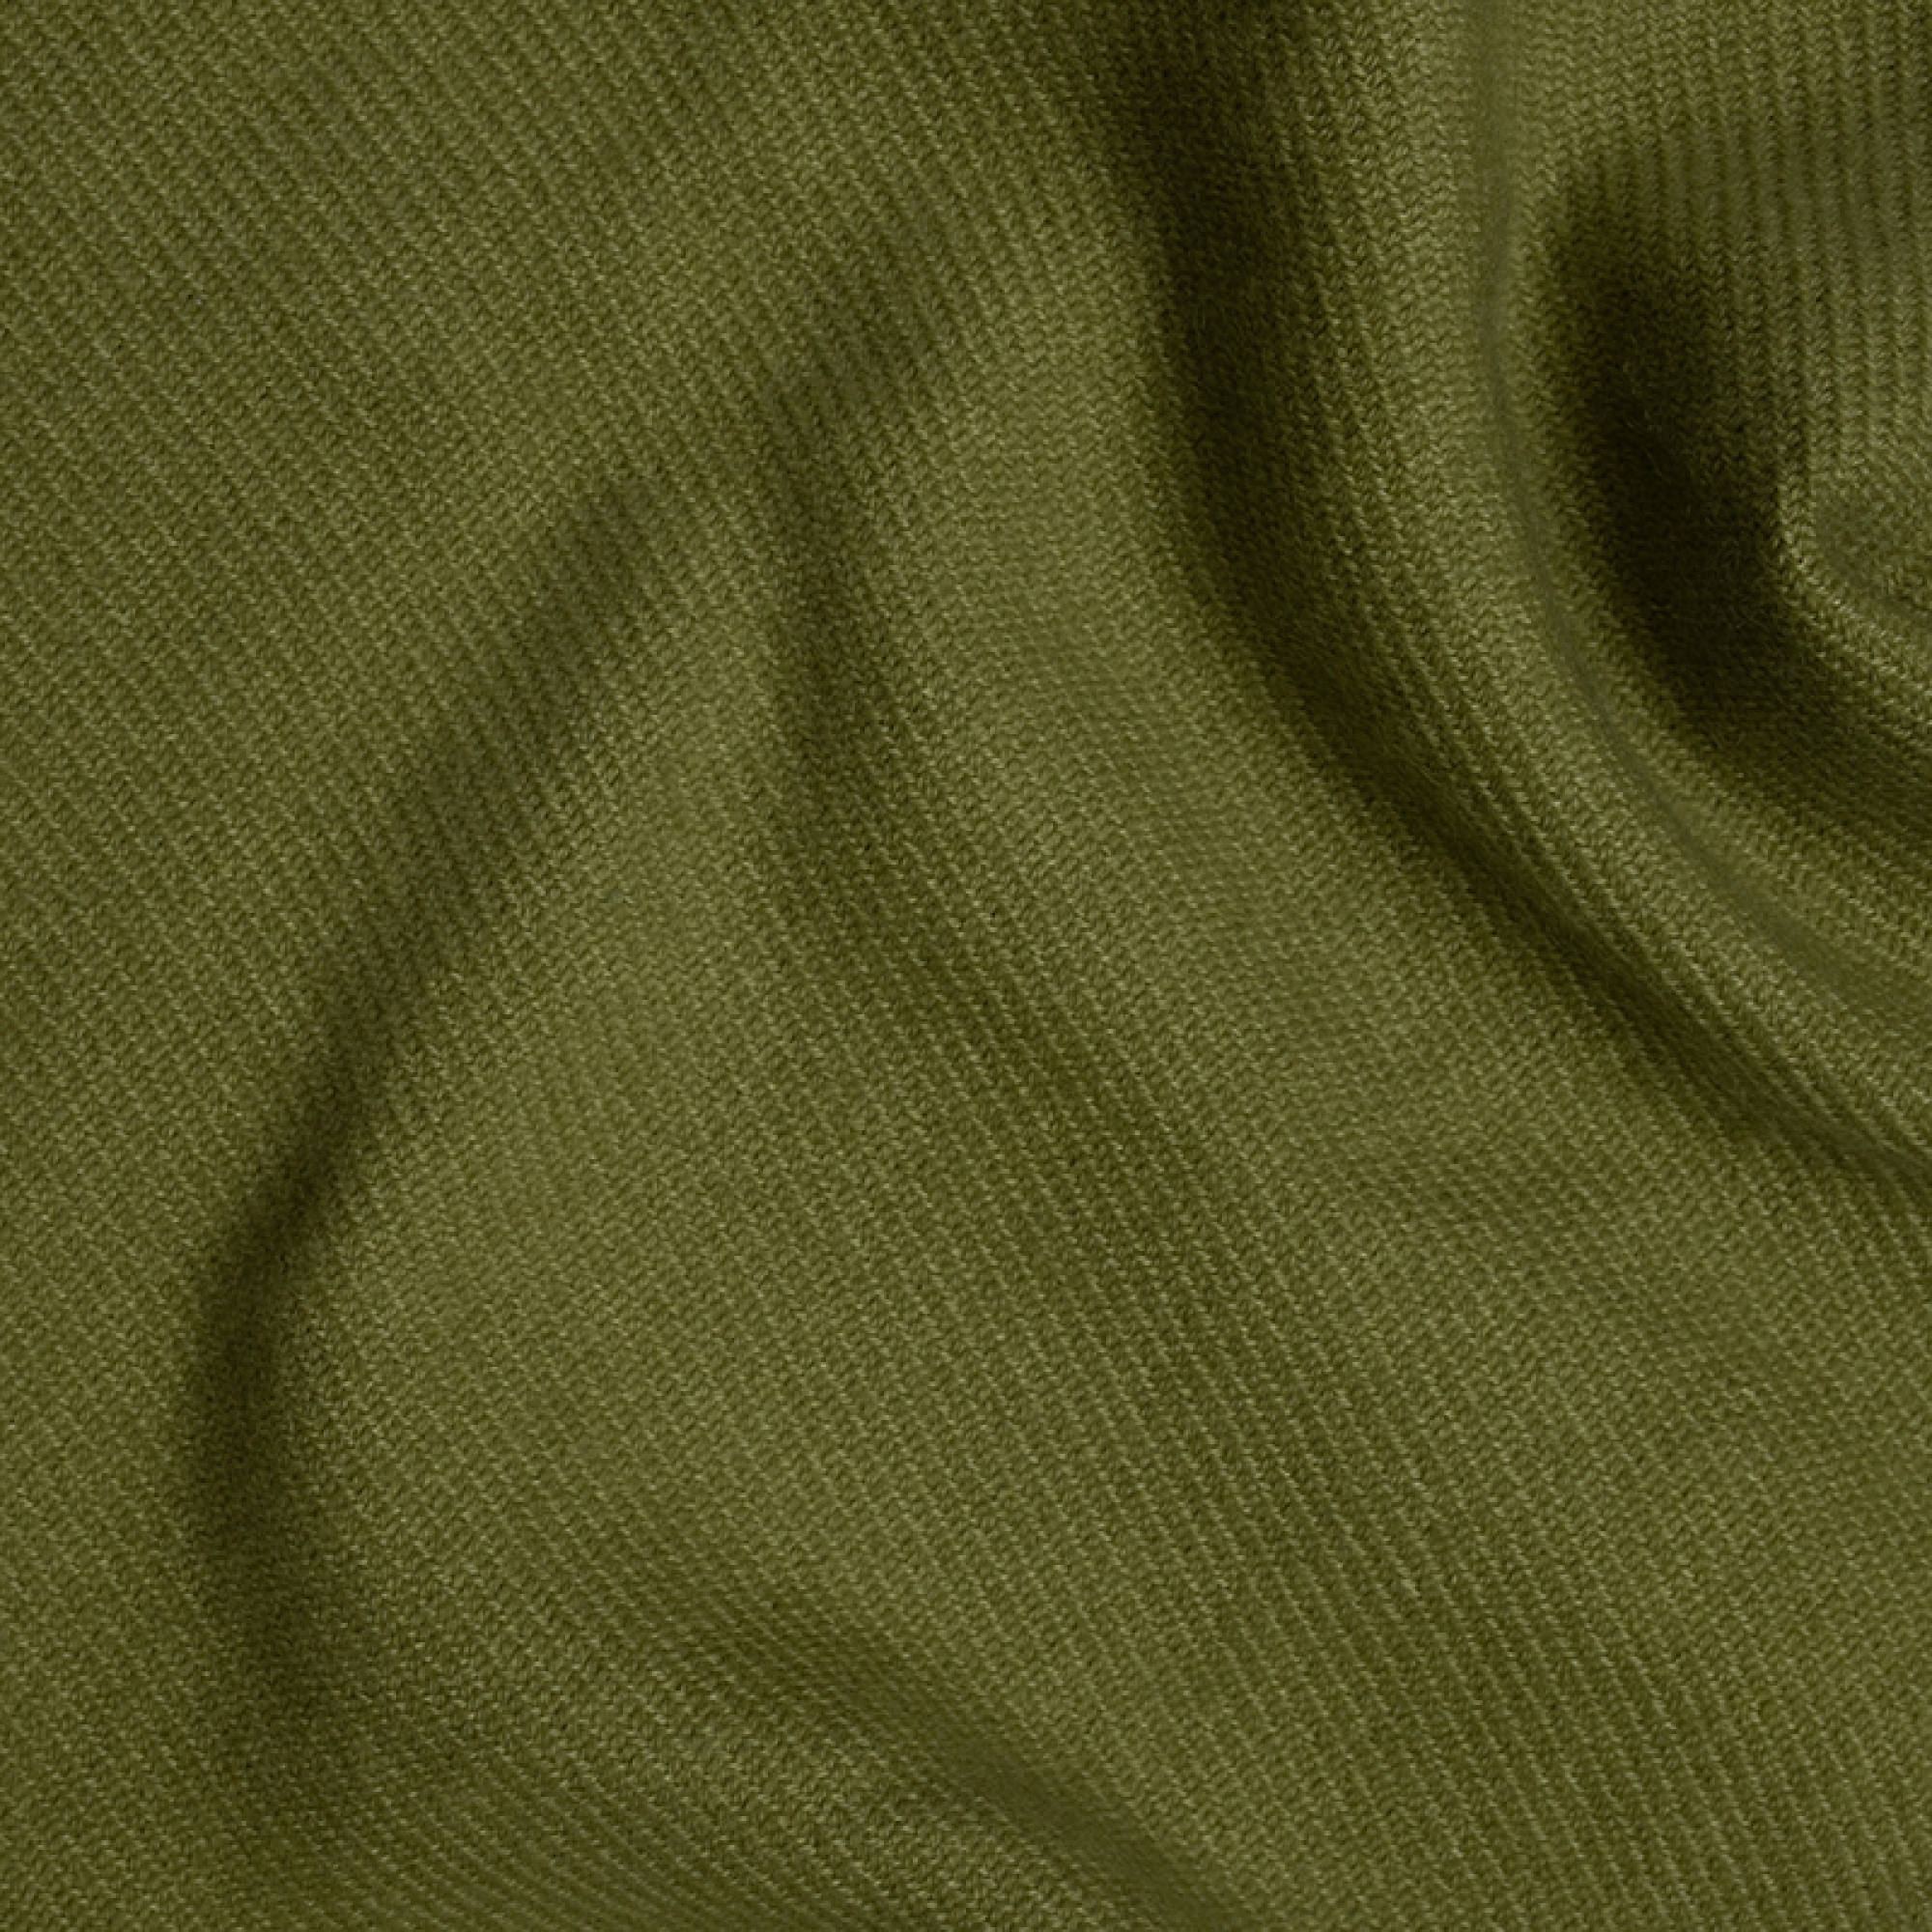 Cashmere accessori frisbi 147 x 203 verde giungla 147 x 203 cm